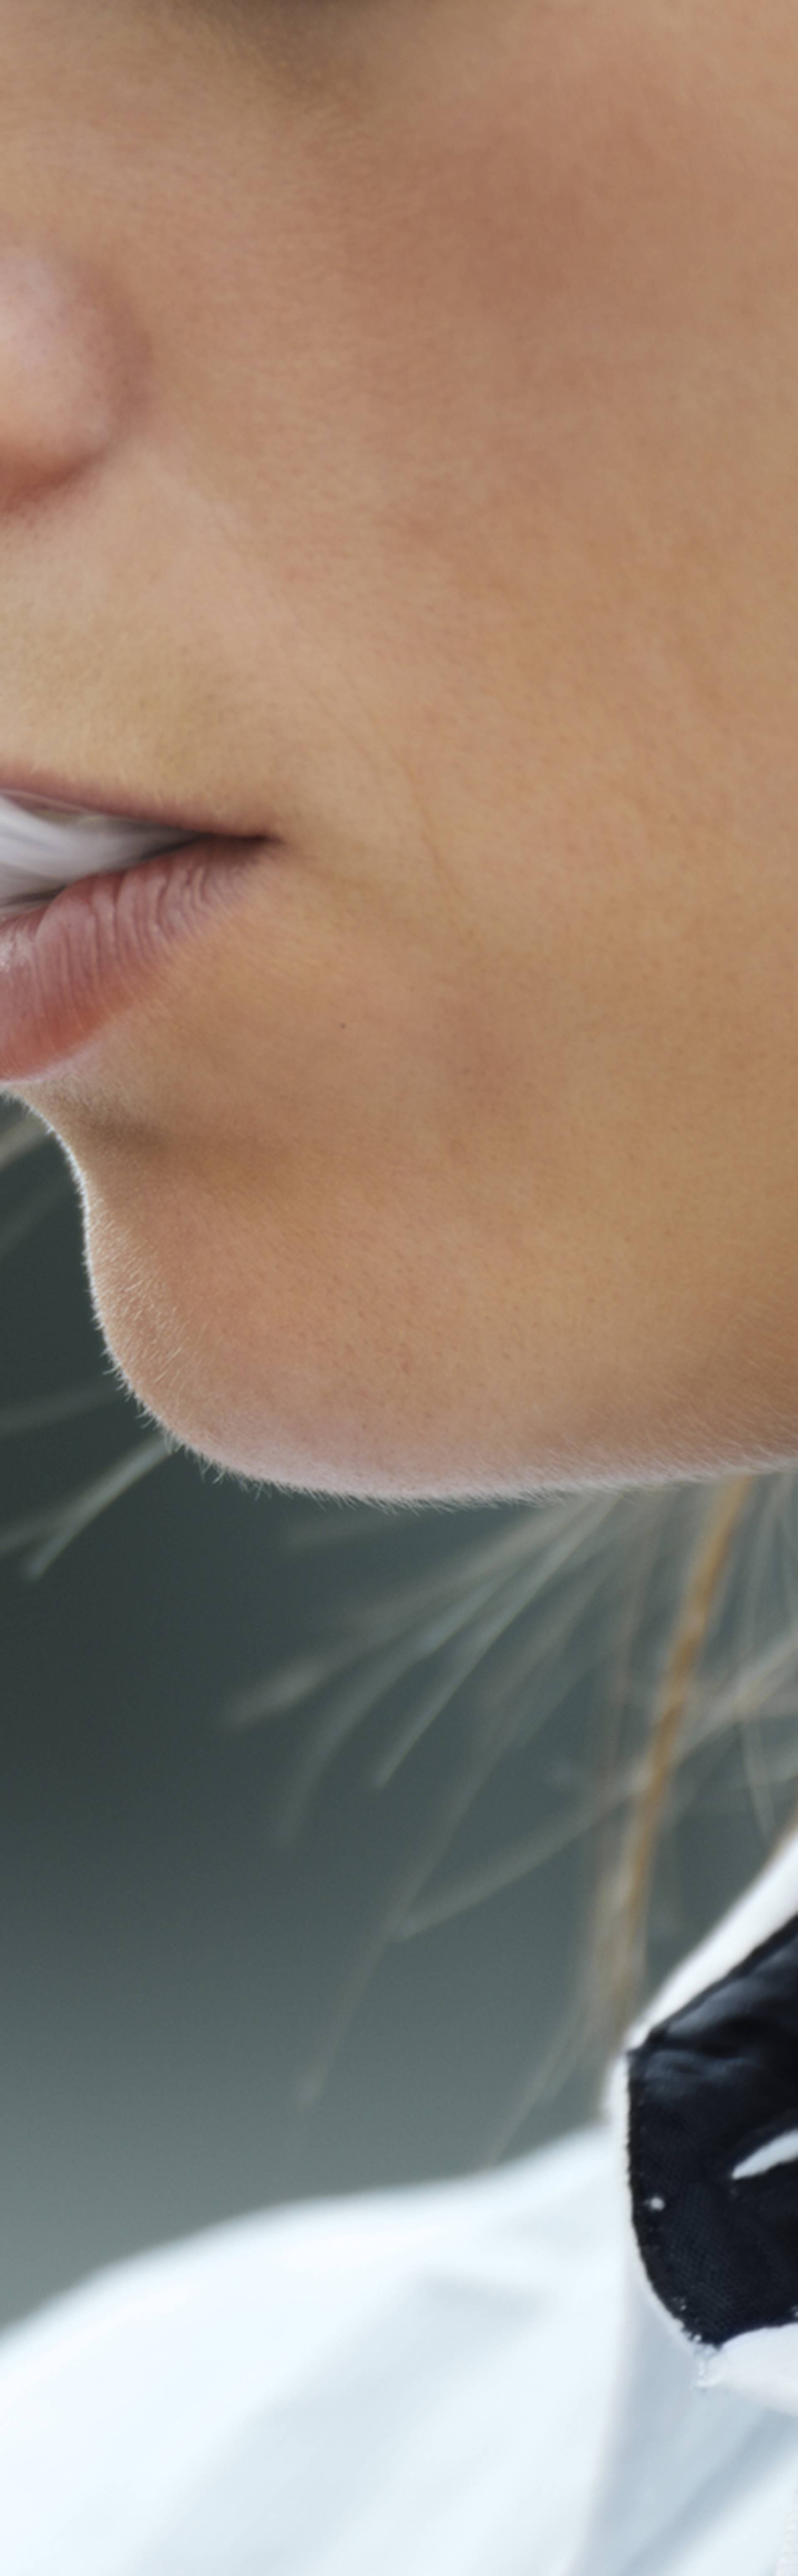 Novi podaci: Uzrok upale pluća iz e-cigareta je acetat vitamina E